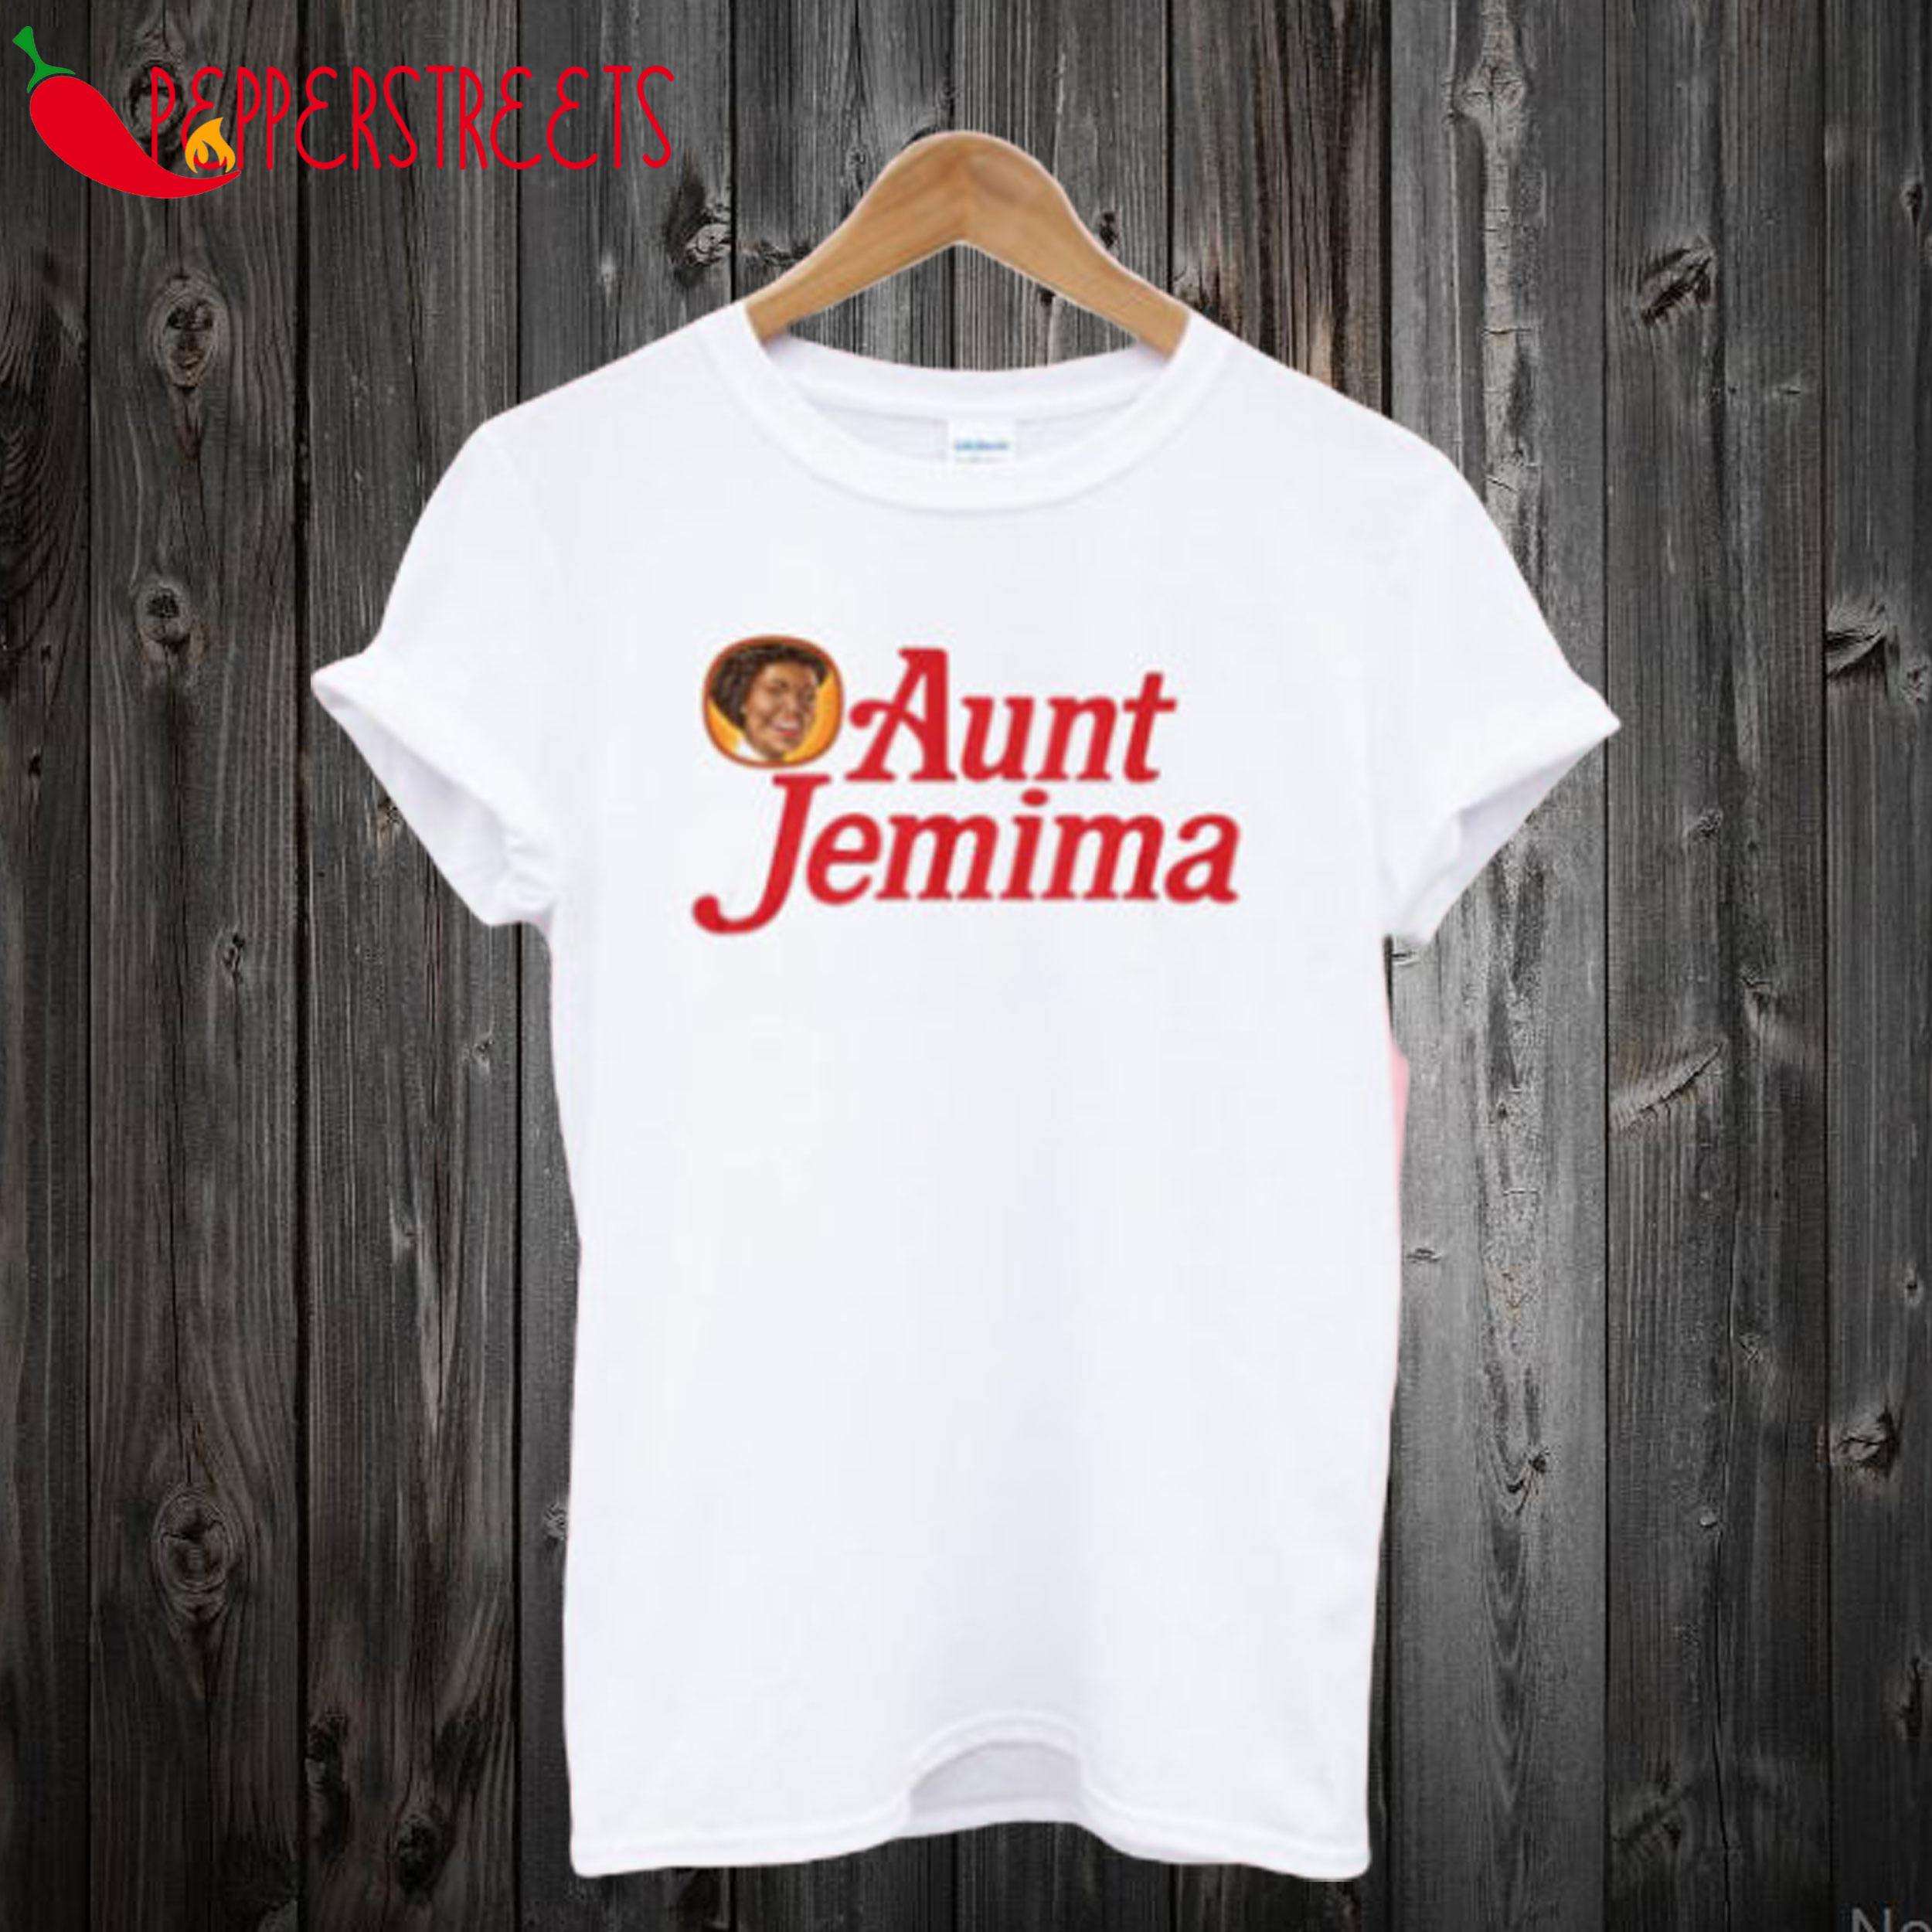 Aunt Jemima T shirt